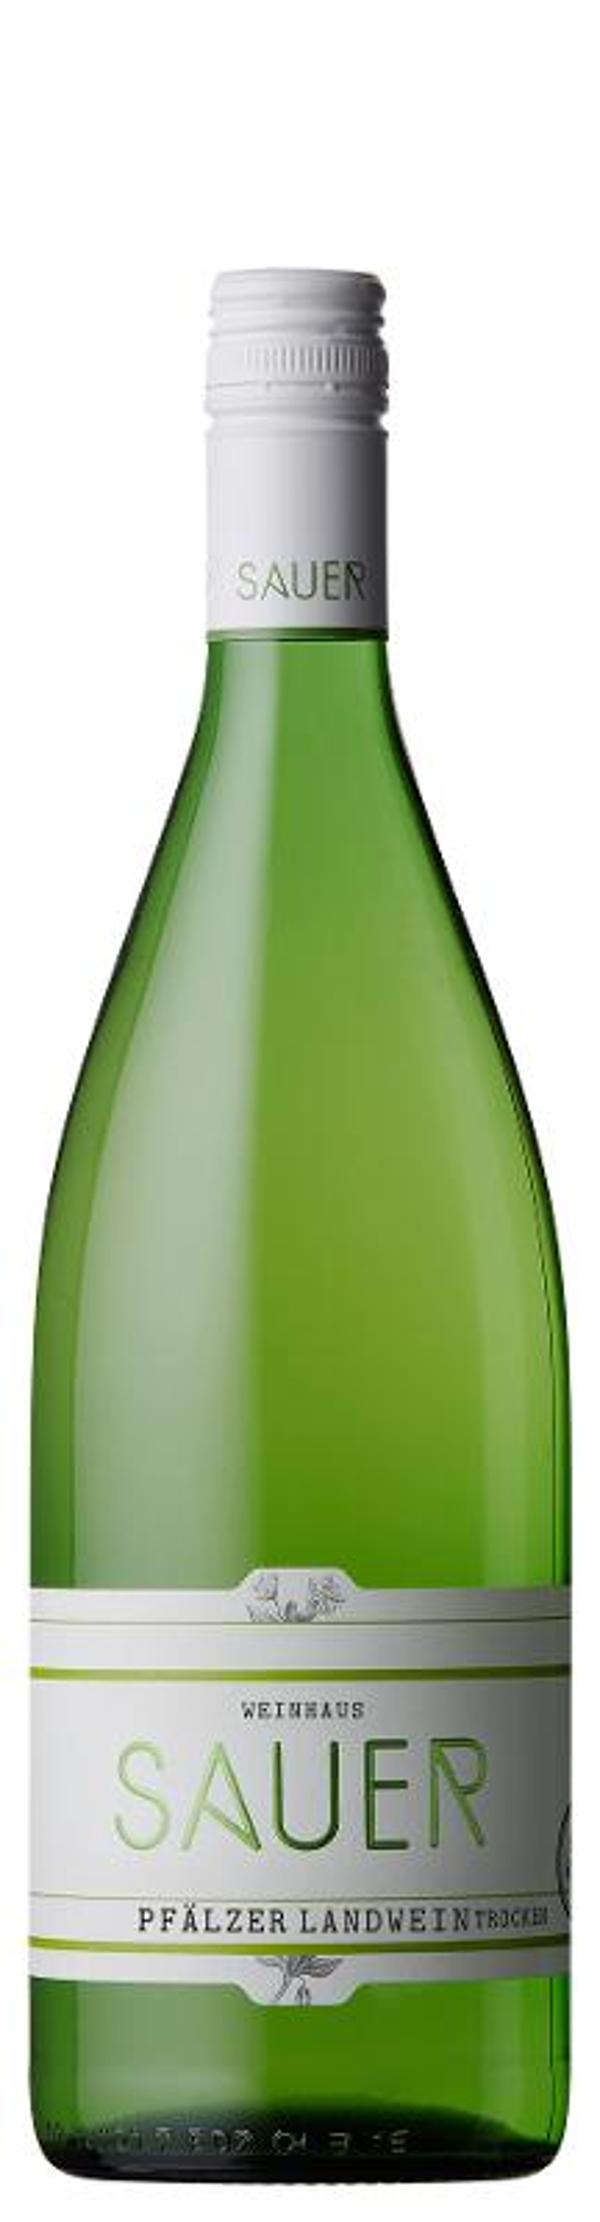 Produktfoto zu VPE Pfälzer Landwein trocken 6x1 l Weingut Heiner Sauer